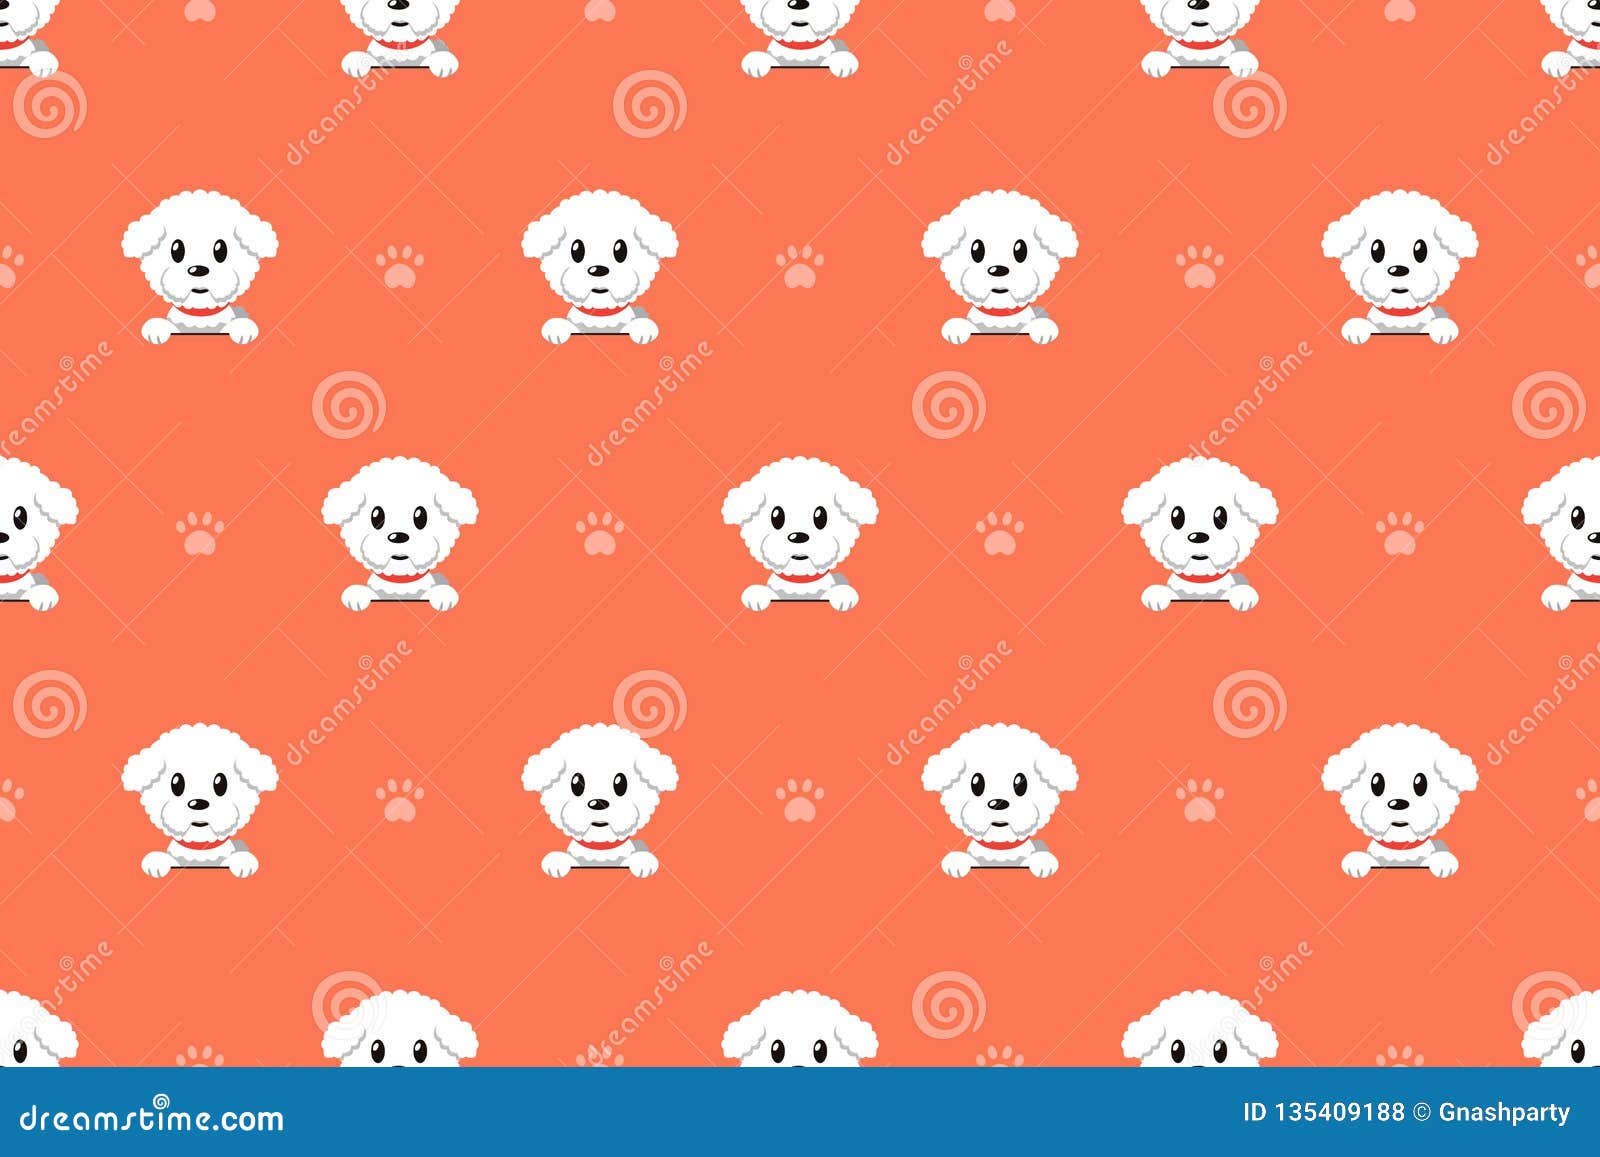  cartoon character bichon frise dog seamless pattern